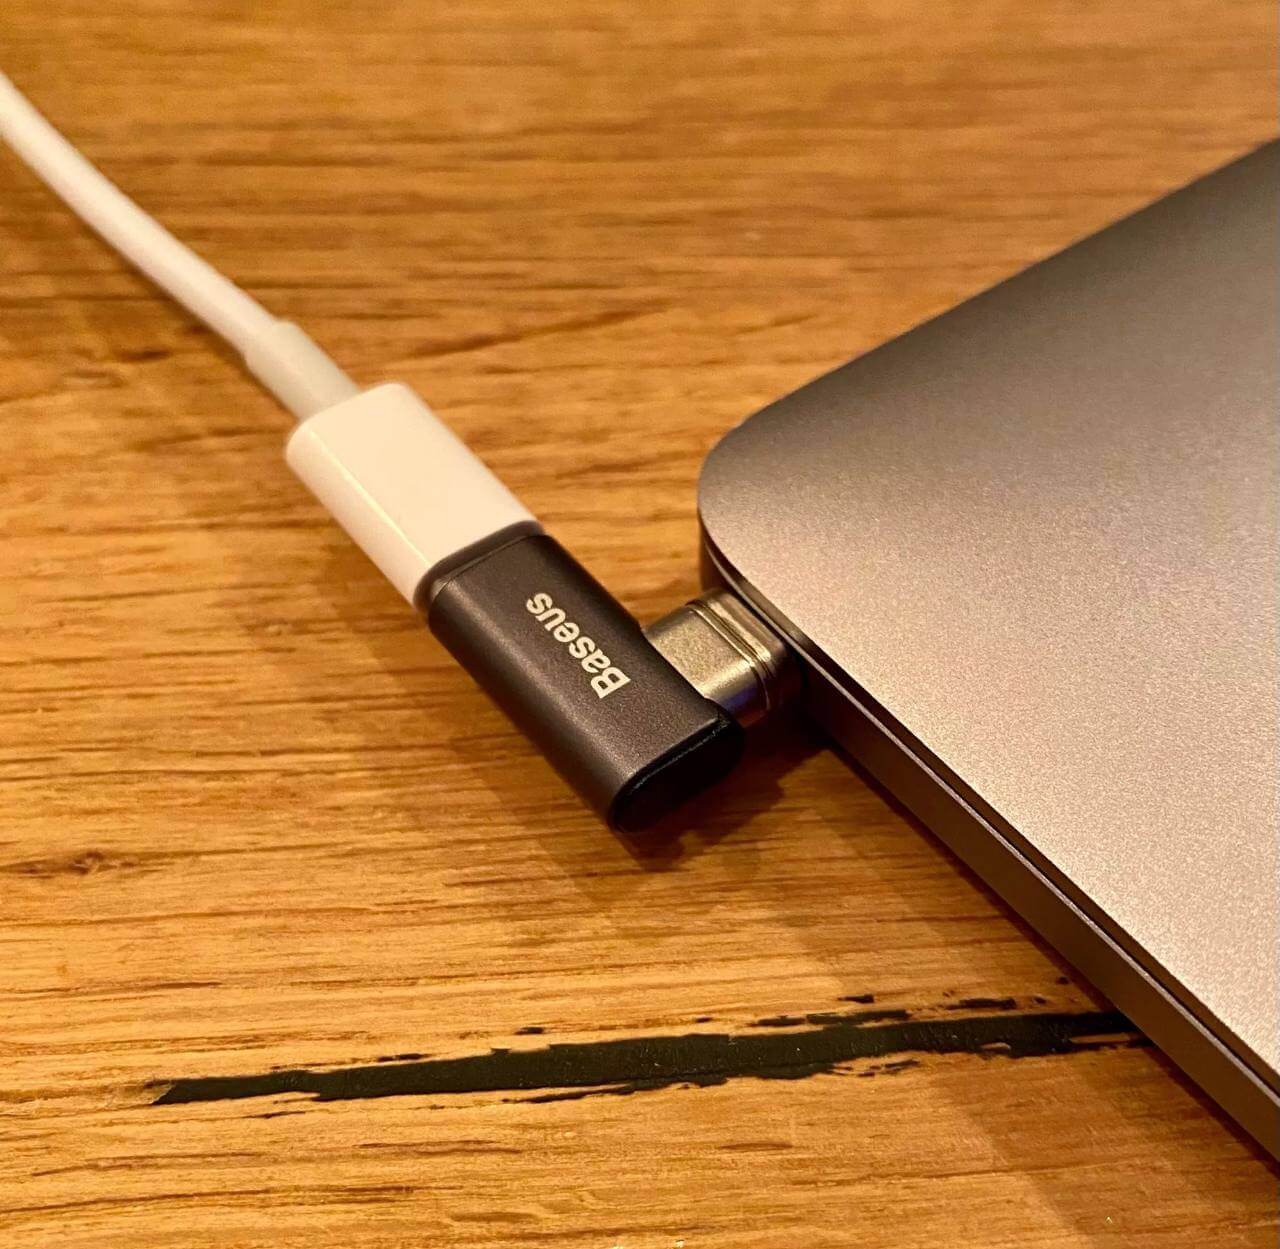 Магнитная зарядка для MacBook. Если случайно задеть такой провод, он отстёгивается от ноутбука. Фото.